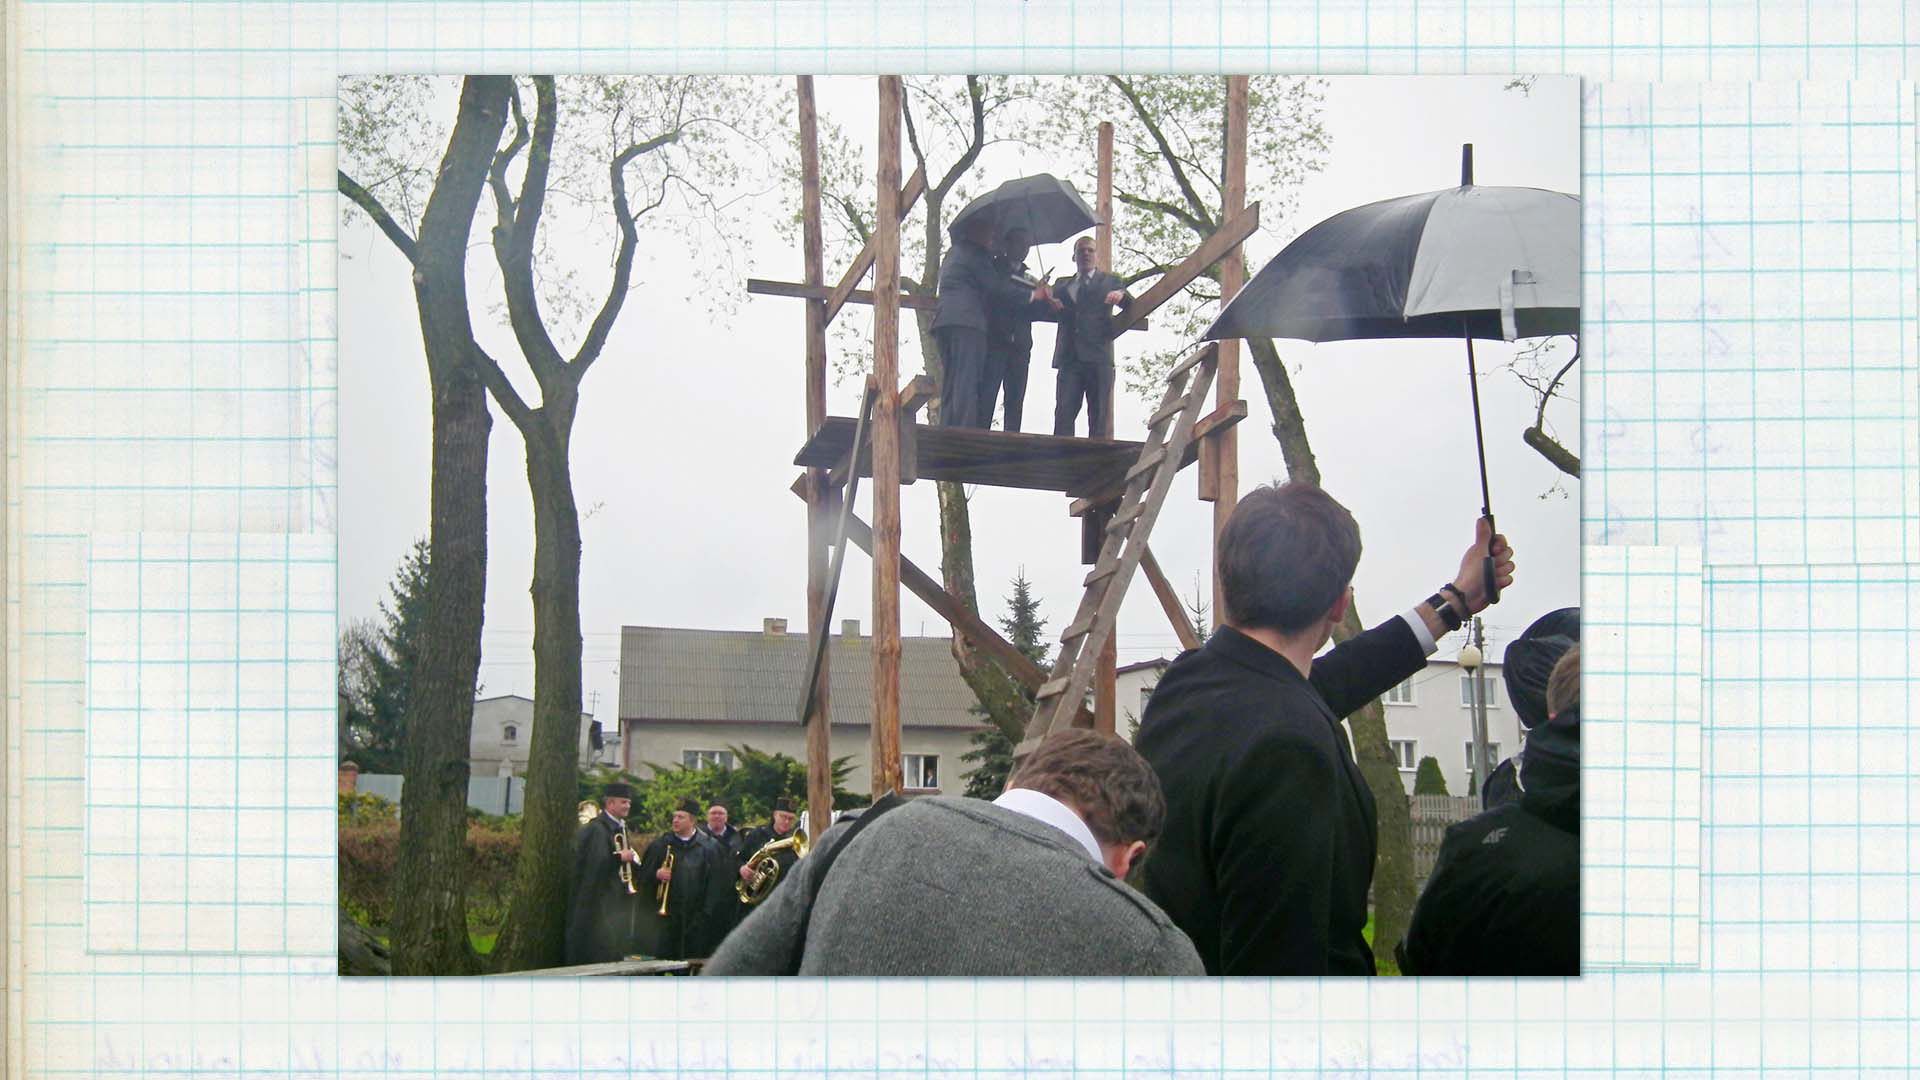 Wygłaszanie przywołówek, Niedziela Wielkanocna, 2014, fot. Paula Kopeć Fotografia w kolorze. Dookoła drewnianej trybuny zgromadziła się publiczność, na jej górze widać stojących pod parasolem trzech mężczyzn.